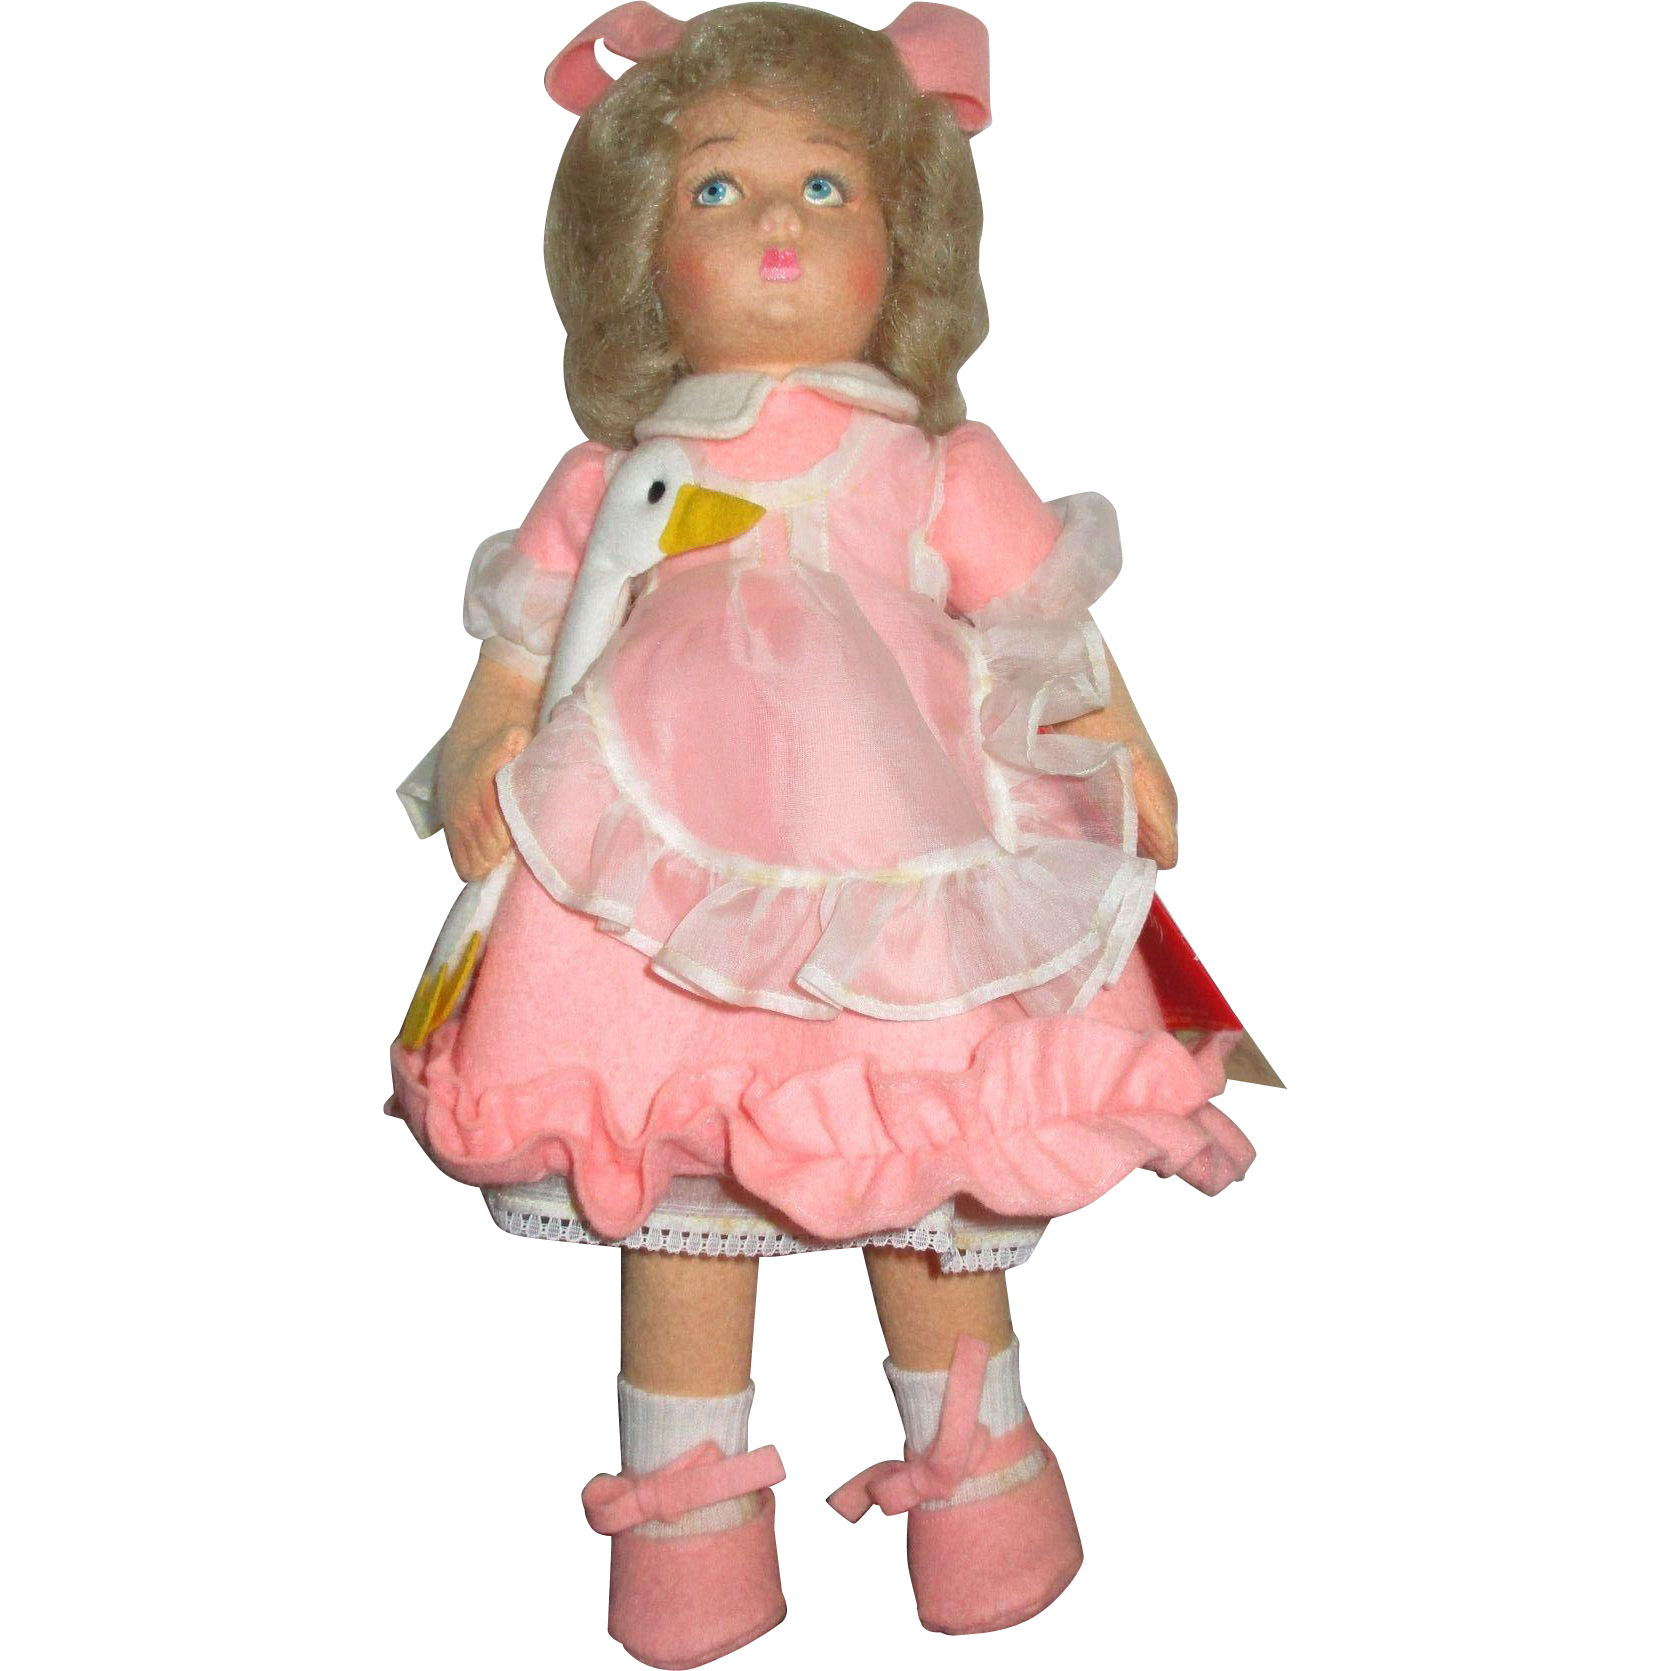 Vintage Girl Doll Transparent Background